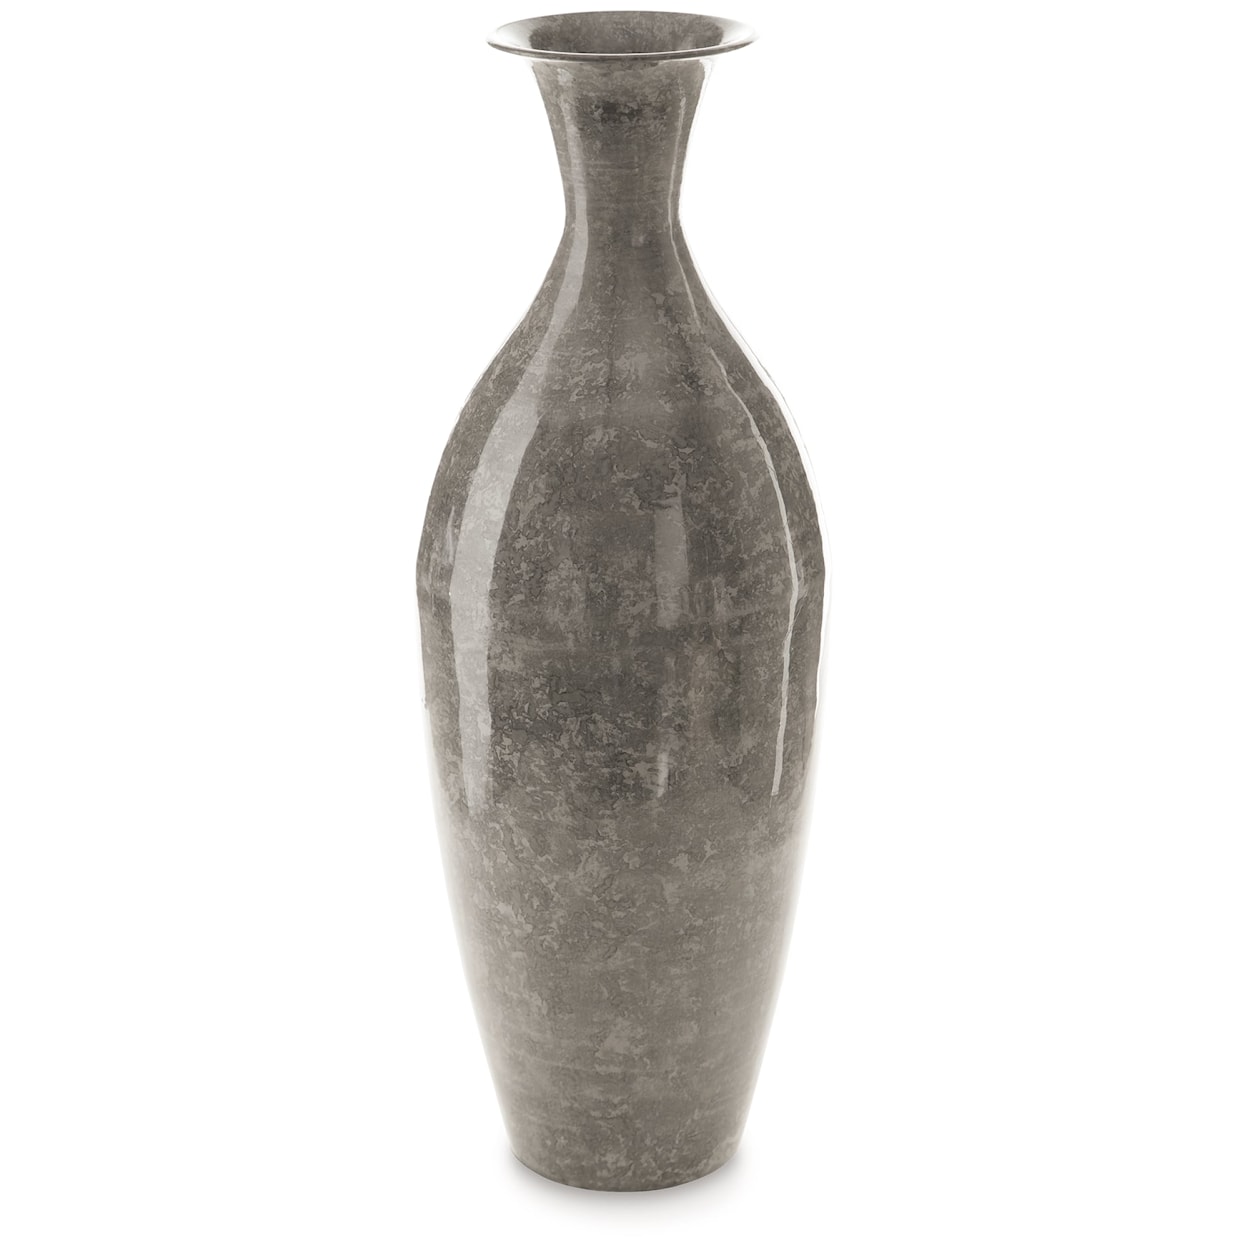 Ashley Signature Design Brockwich Vase